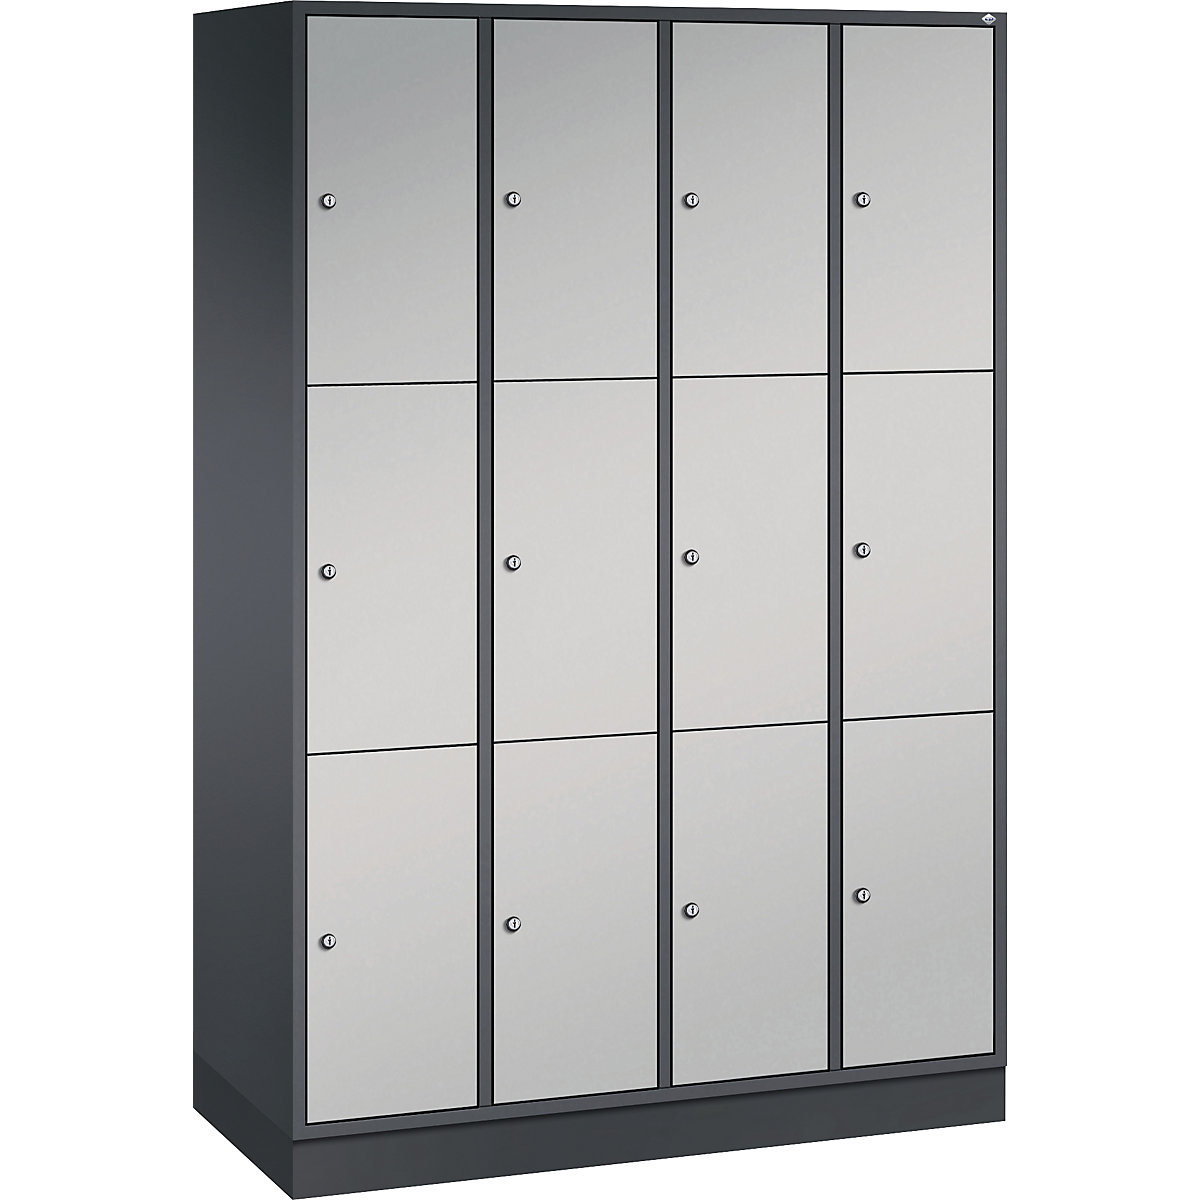 Vestiaire multicases en acier INTRO, casiers hauteur 580 mm – C+P, l x p 1220 x 500 mm, 12 casiers, corps gris noir, portes coloris aluminium-9